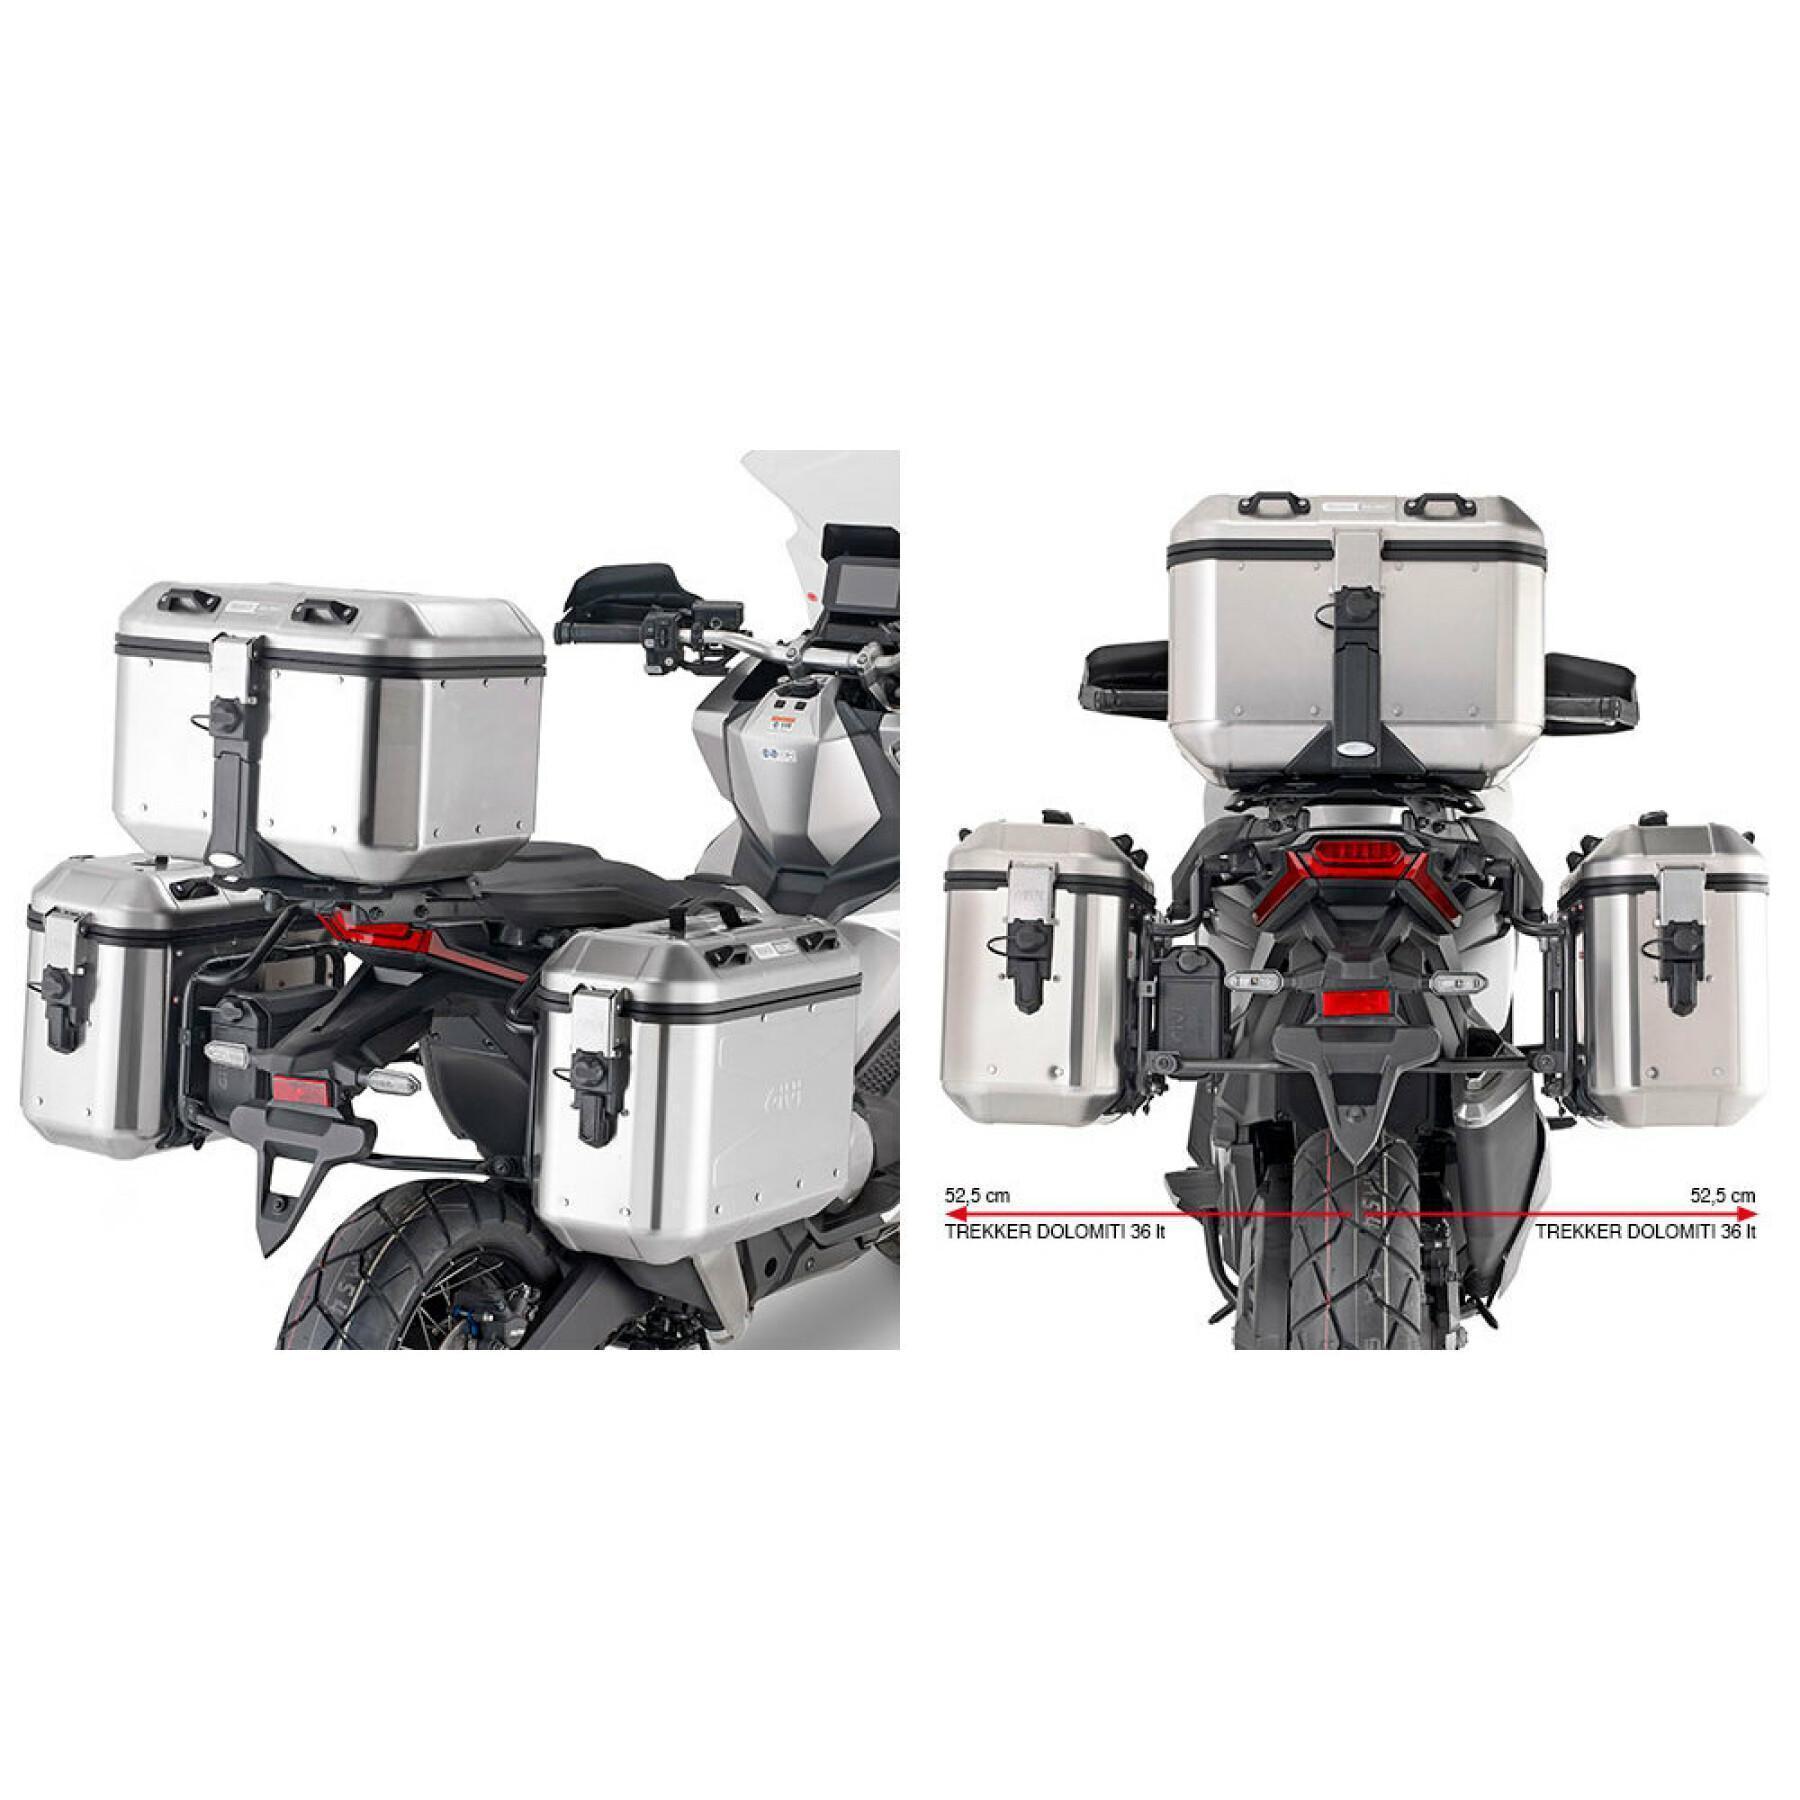 Podpora boczna motocykla Givi Monokey Honda X-Adv 750 21